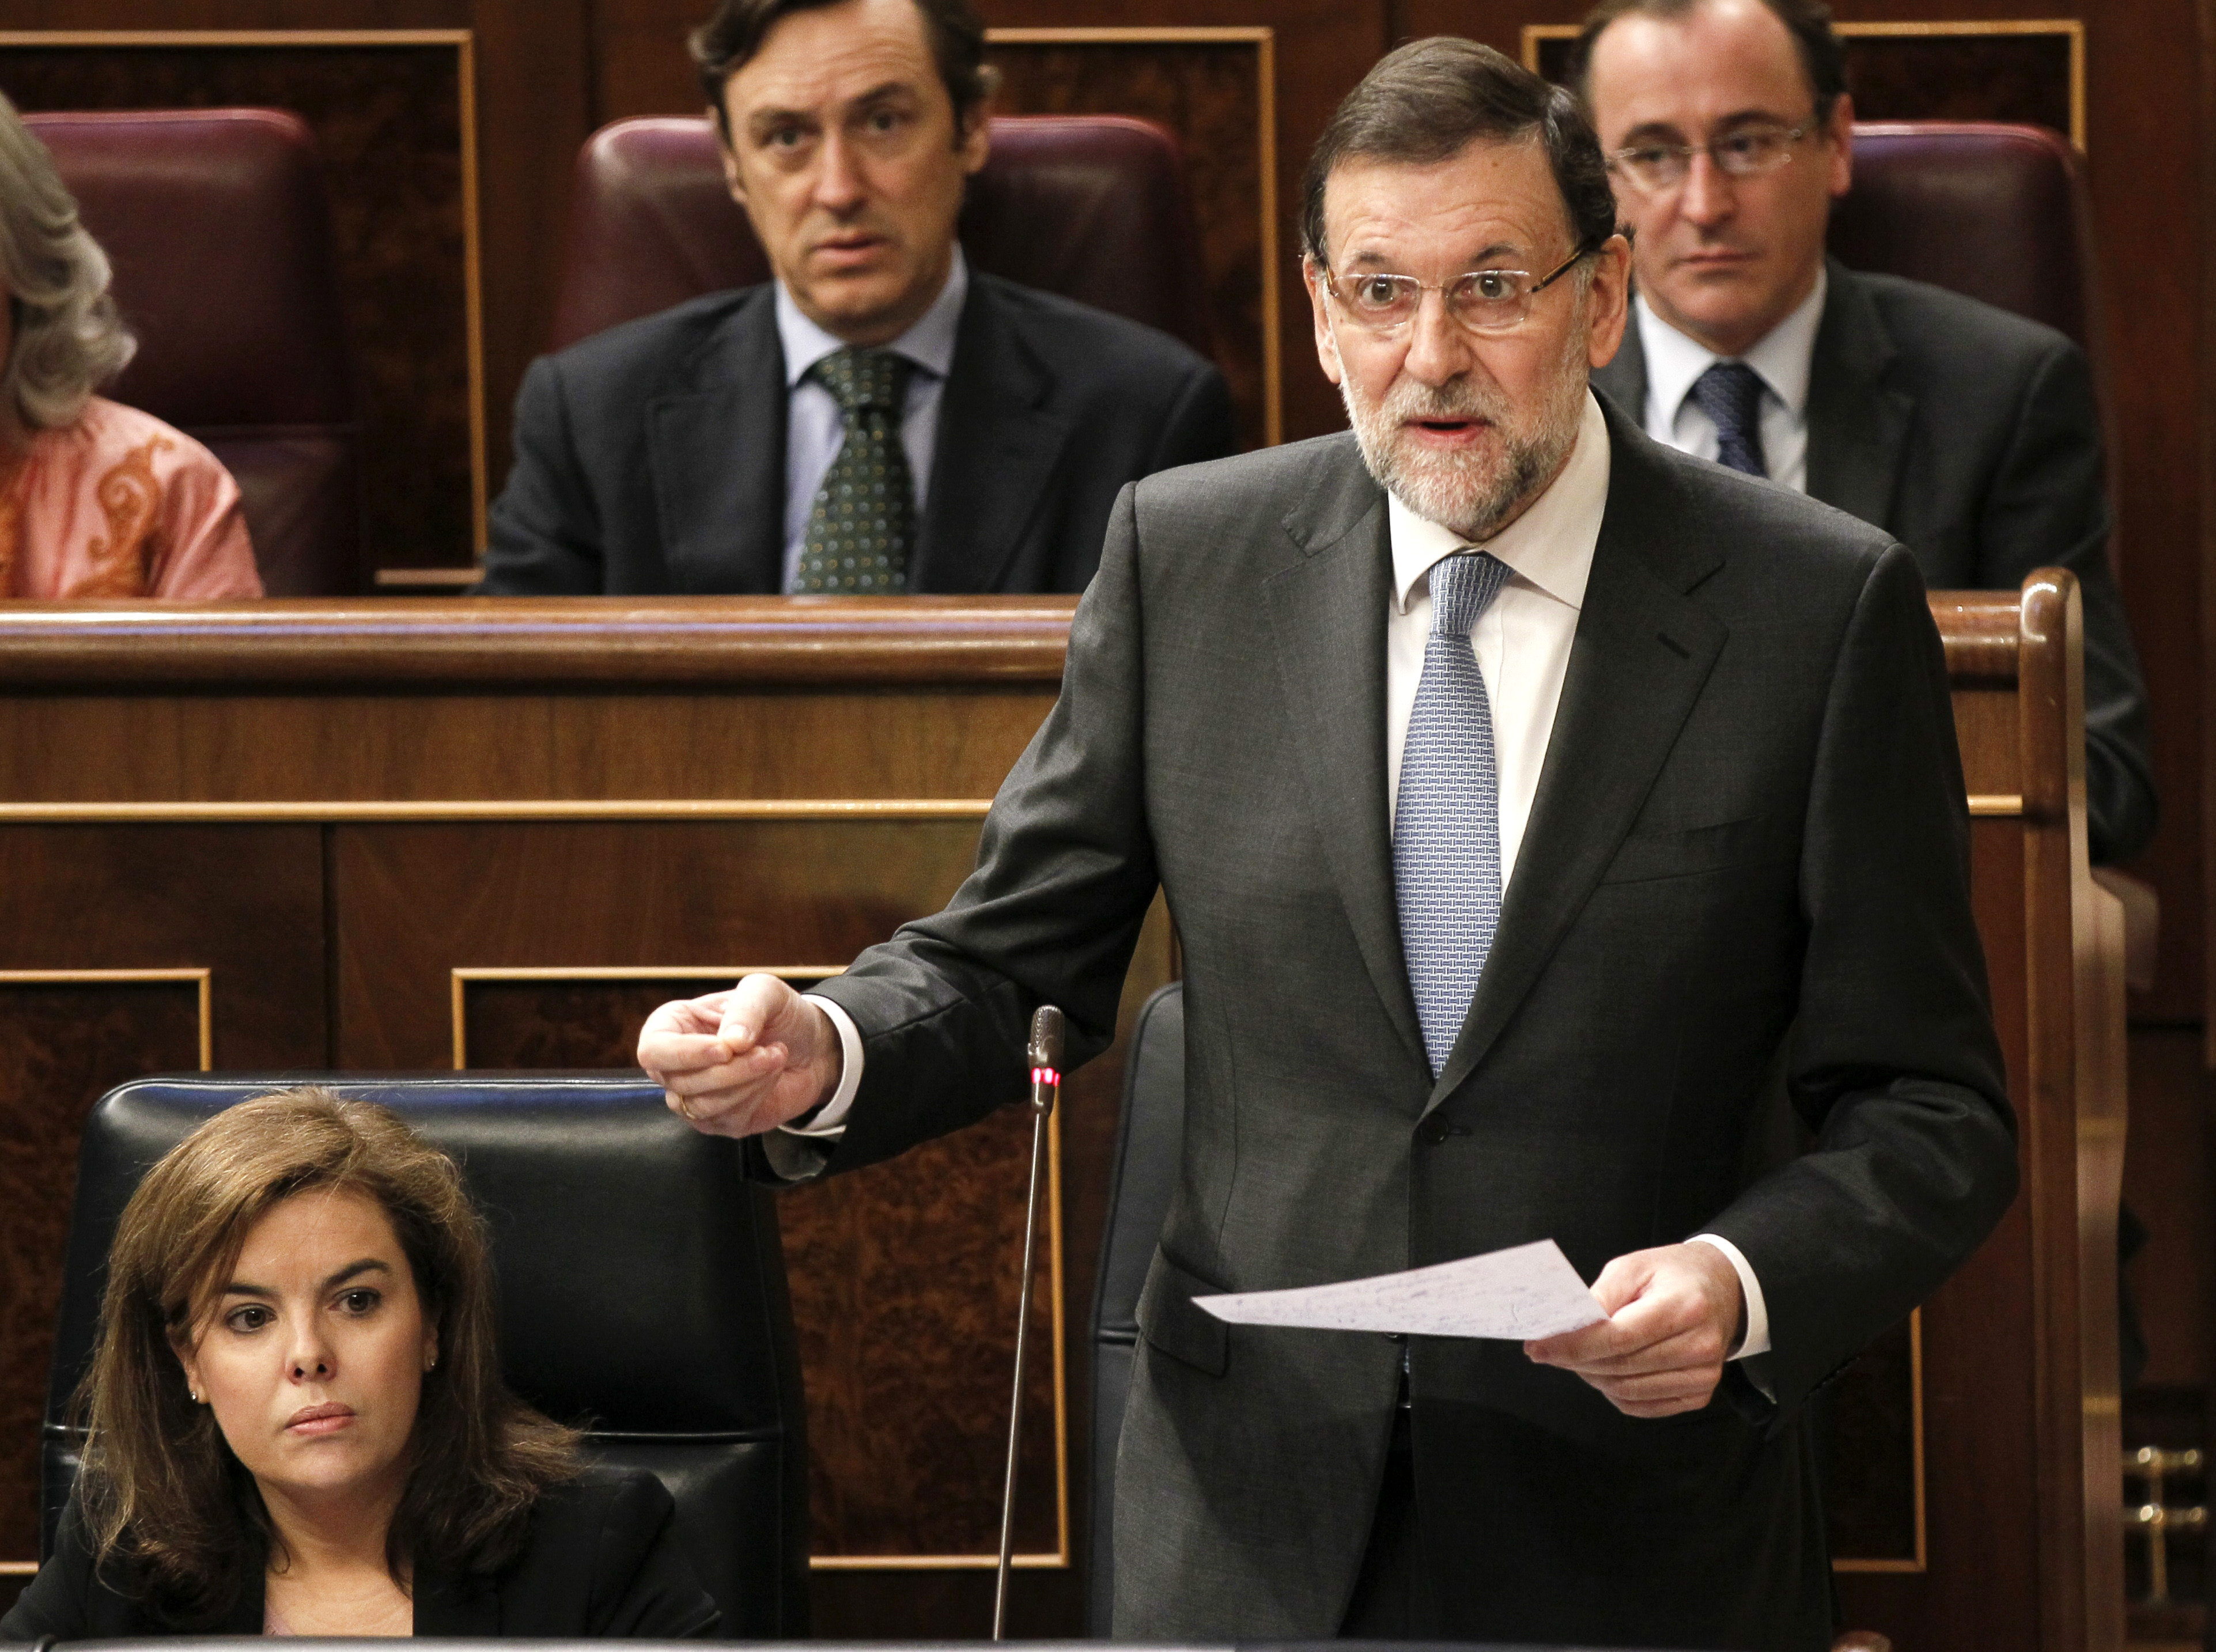 Regular el lobby, el gran reto de la política española